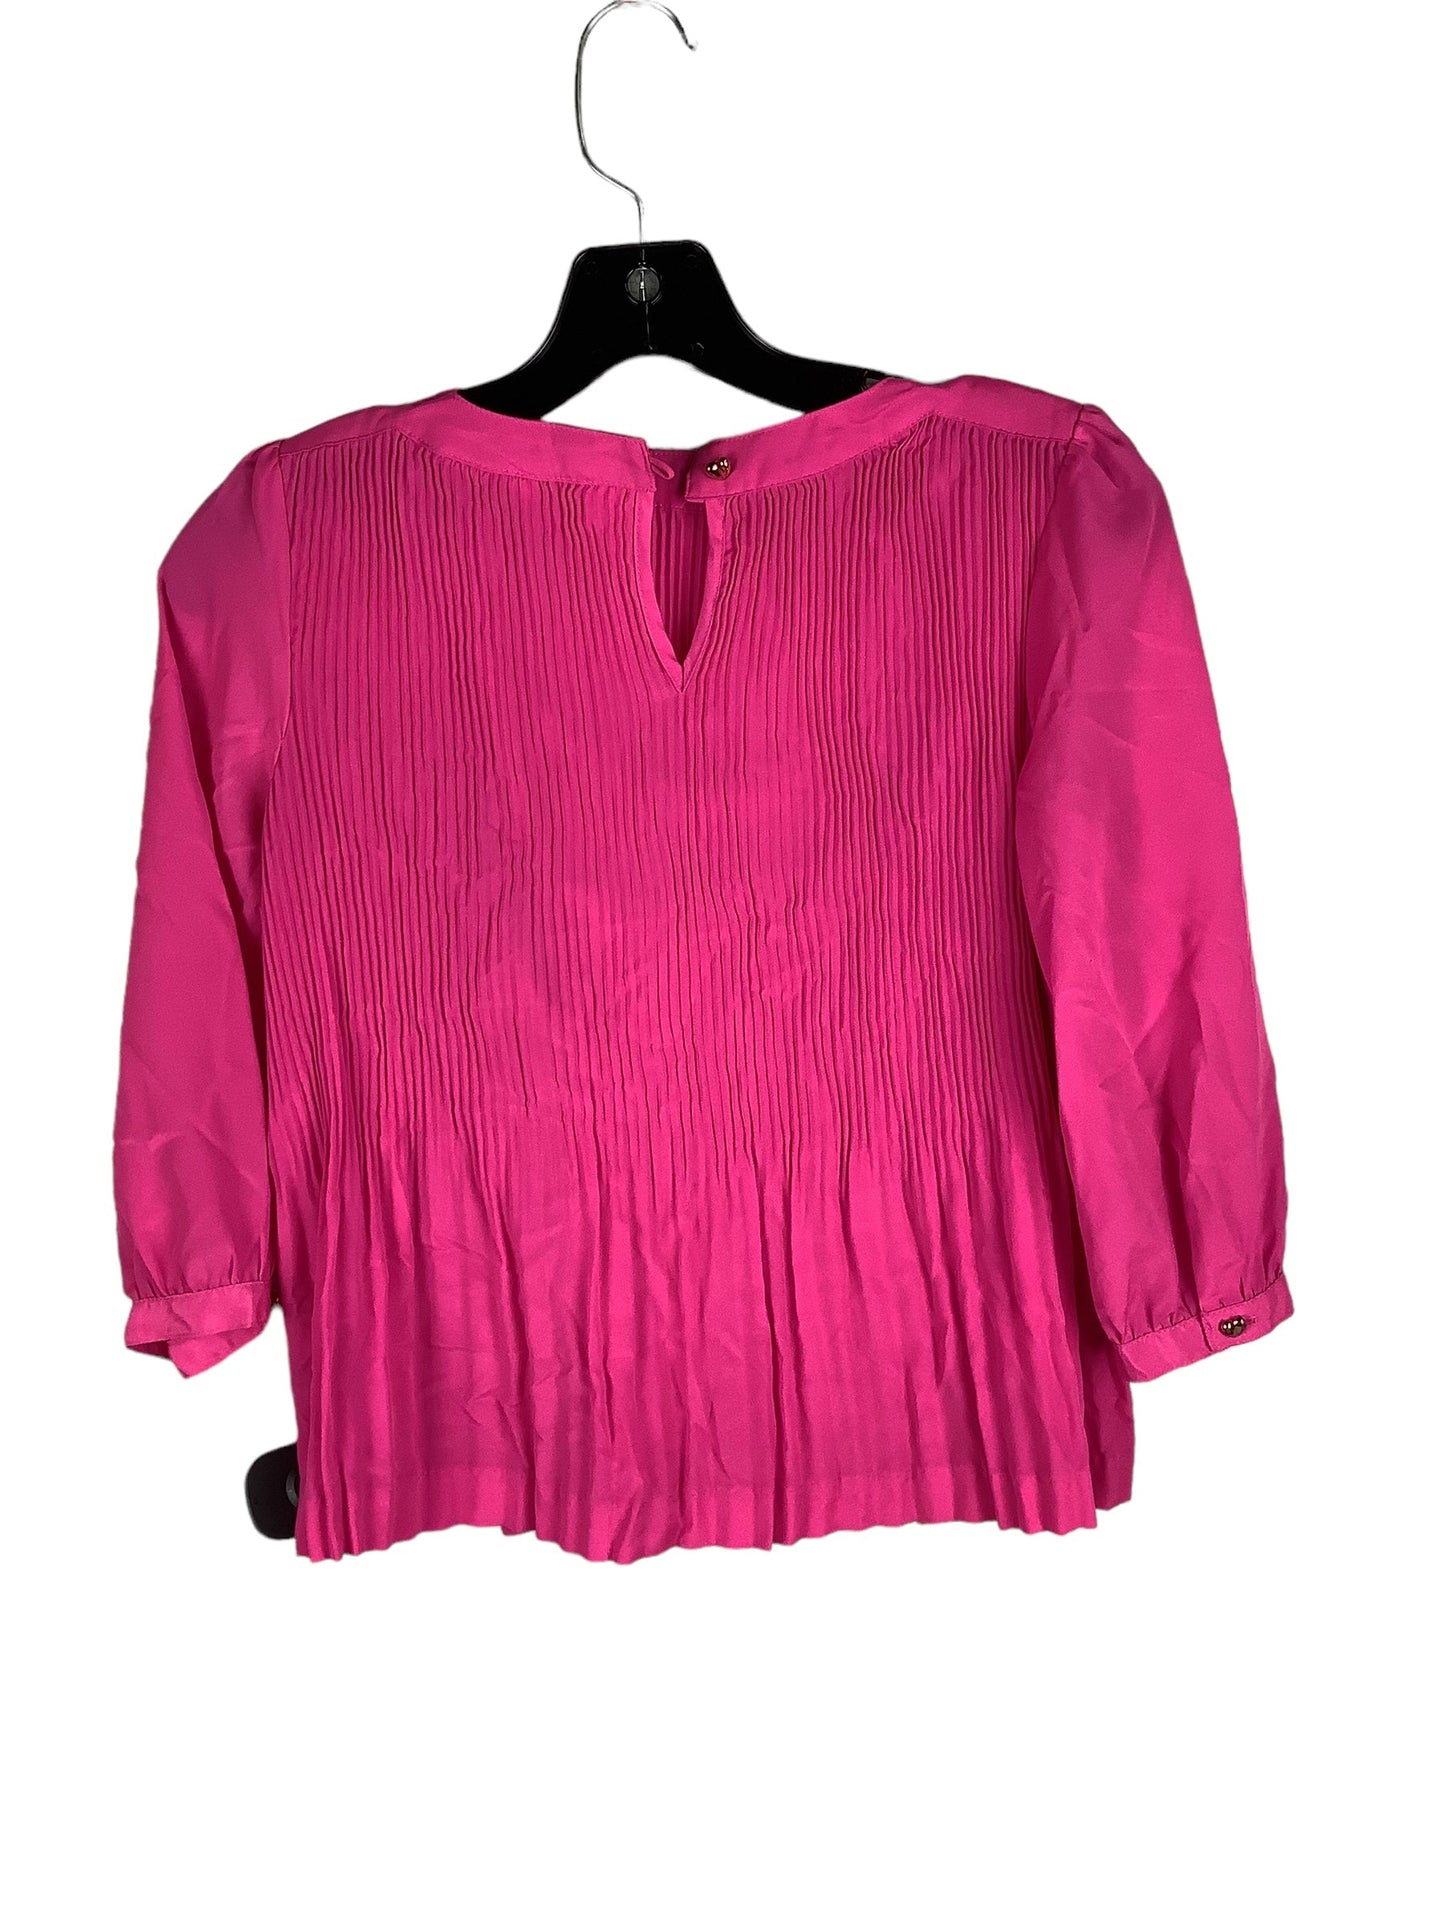 Pink Top Long Sleeve Designer Ted Baker, Size S